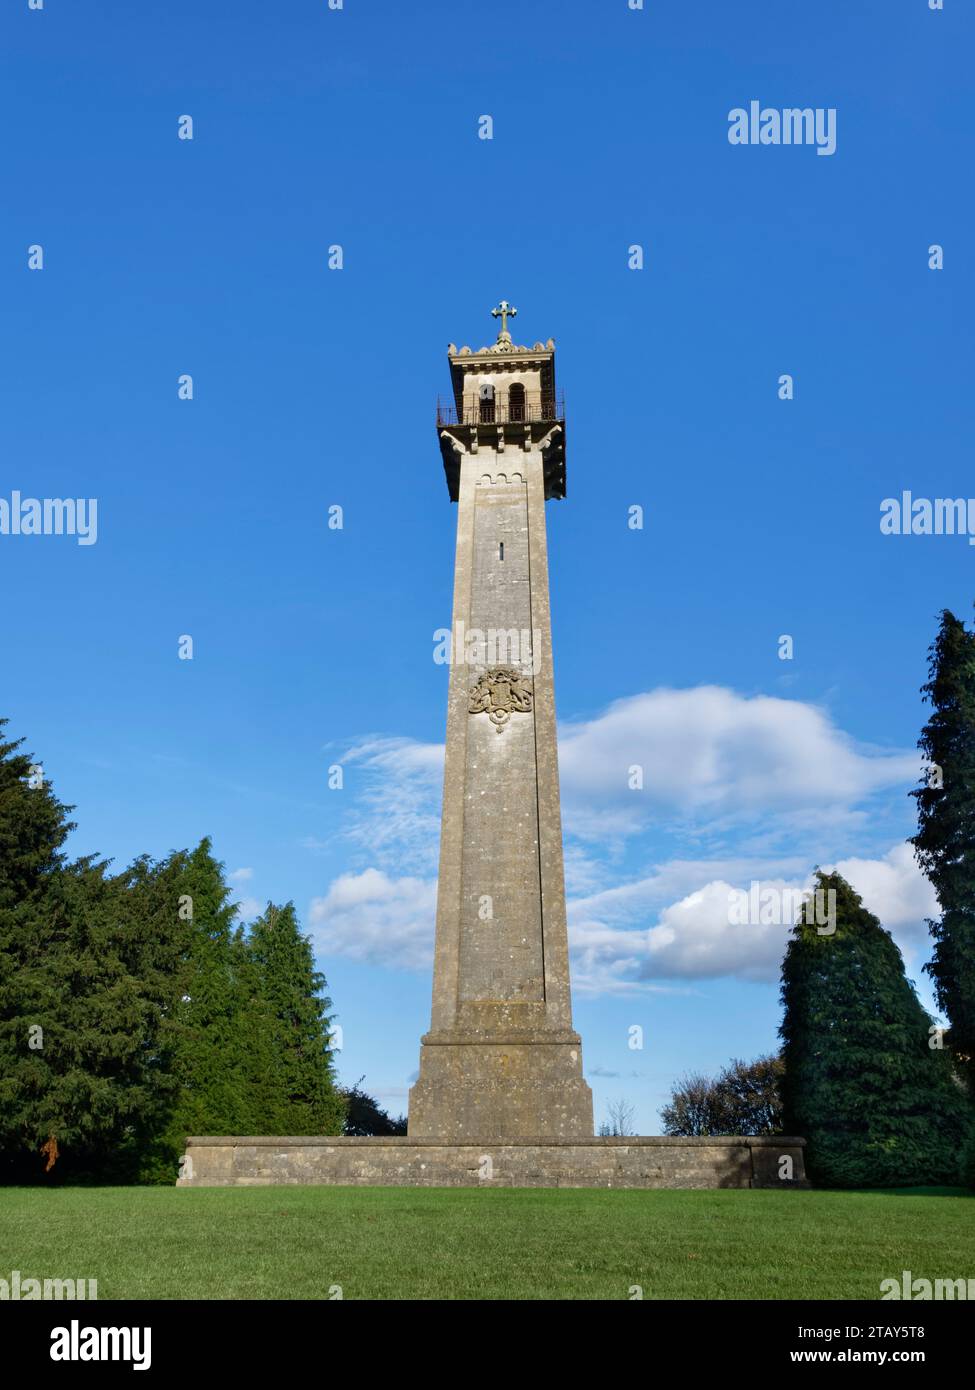 El monumento de Somerset, encargado en 1846 por Lord Robert Somerset, un general en la Batalla de Waterloo, Hawkesbury Upton, Gloucestershire, Reino Unido. Foto de stock